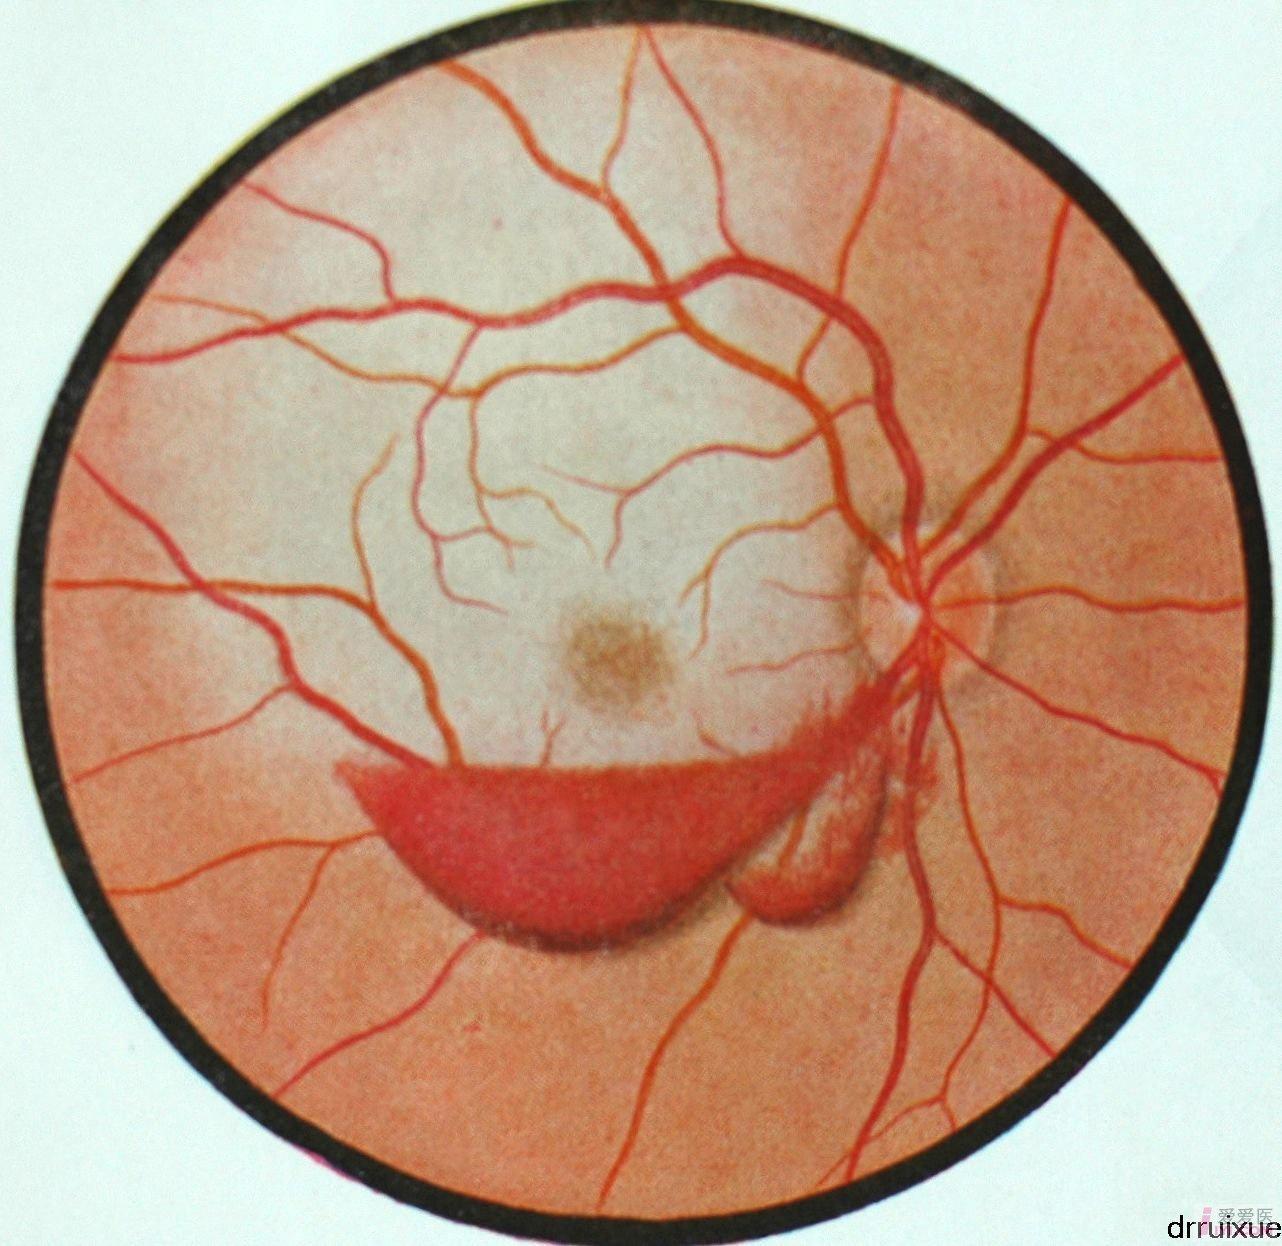 3.右眼外伤性视网膜前出血.JPG